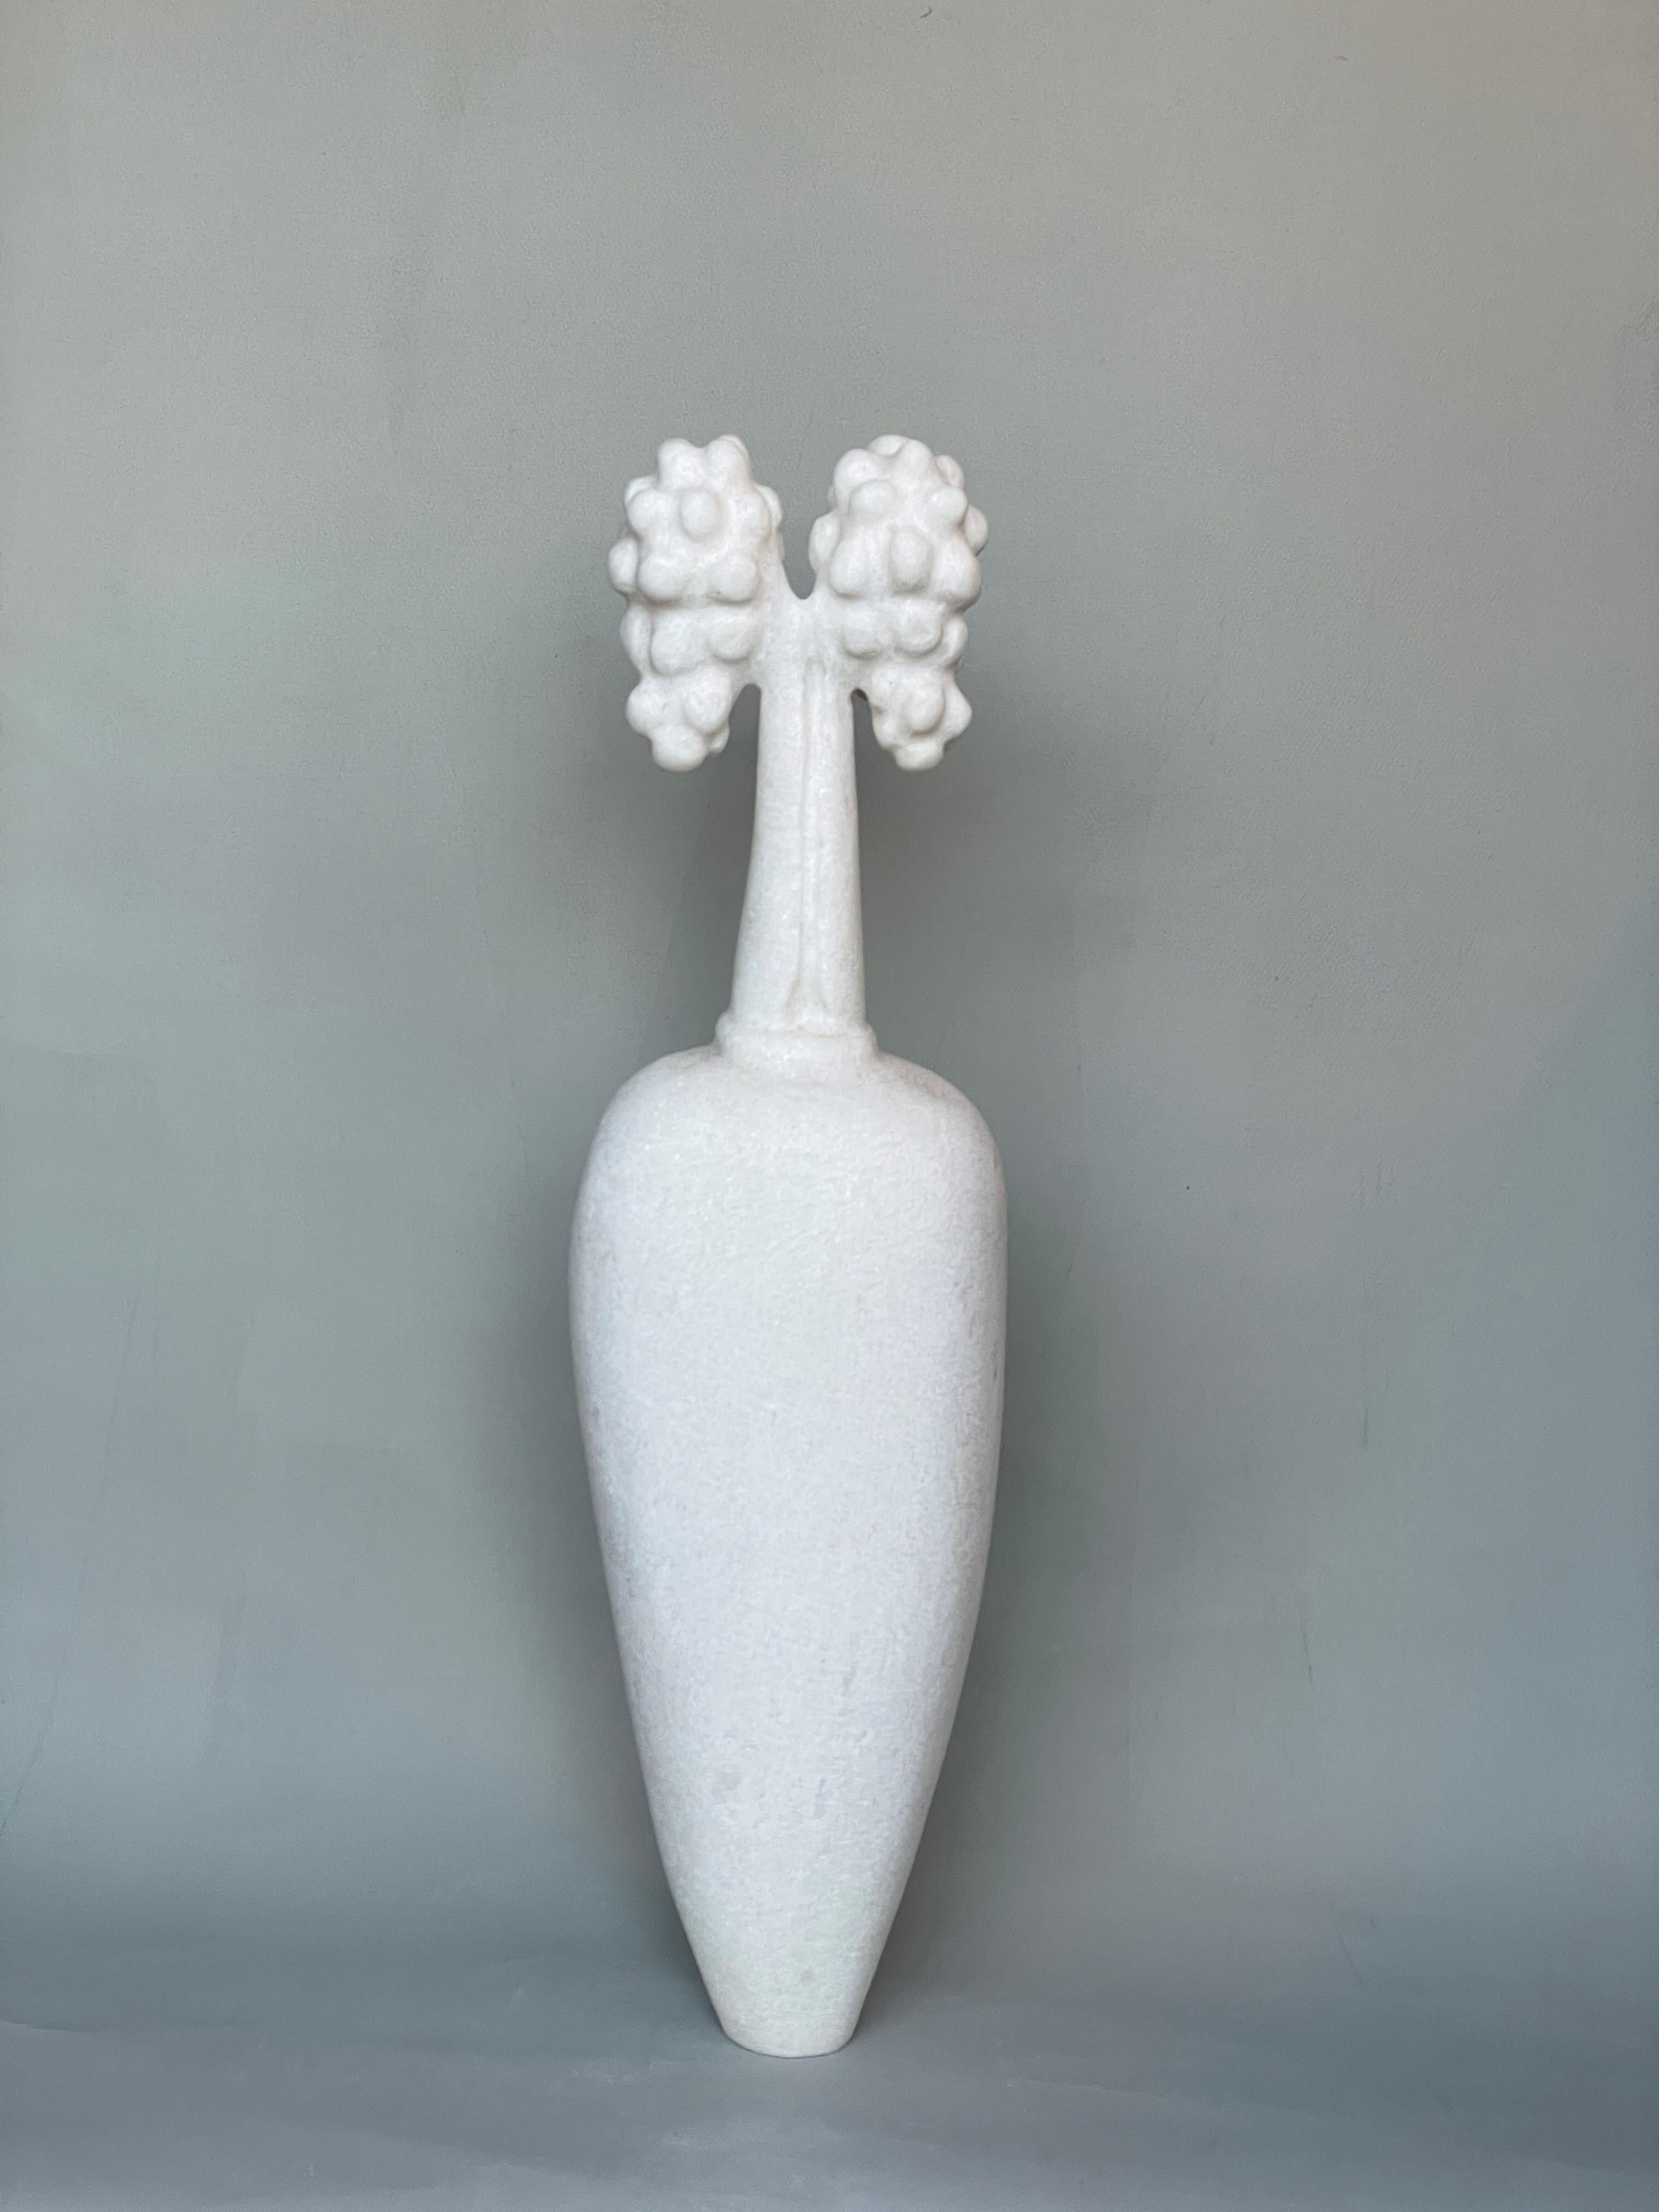 Sprout, sculpture en marbre sculptée à la main par Tom Von Kaenel
Dimensions : D 13 x L 18 x H 51 cm
Matériaux : marbre

Tom von Kaenel, sculpteur et peintre, est né en Suisse en 1961. Dès sa plus tendre enfance, il s'est profondément consacré à